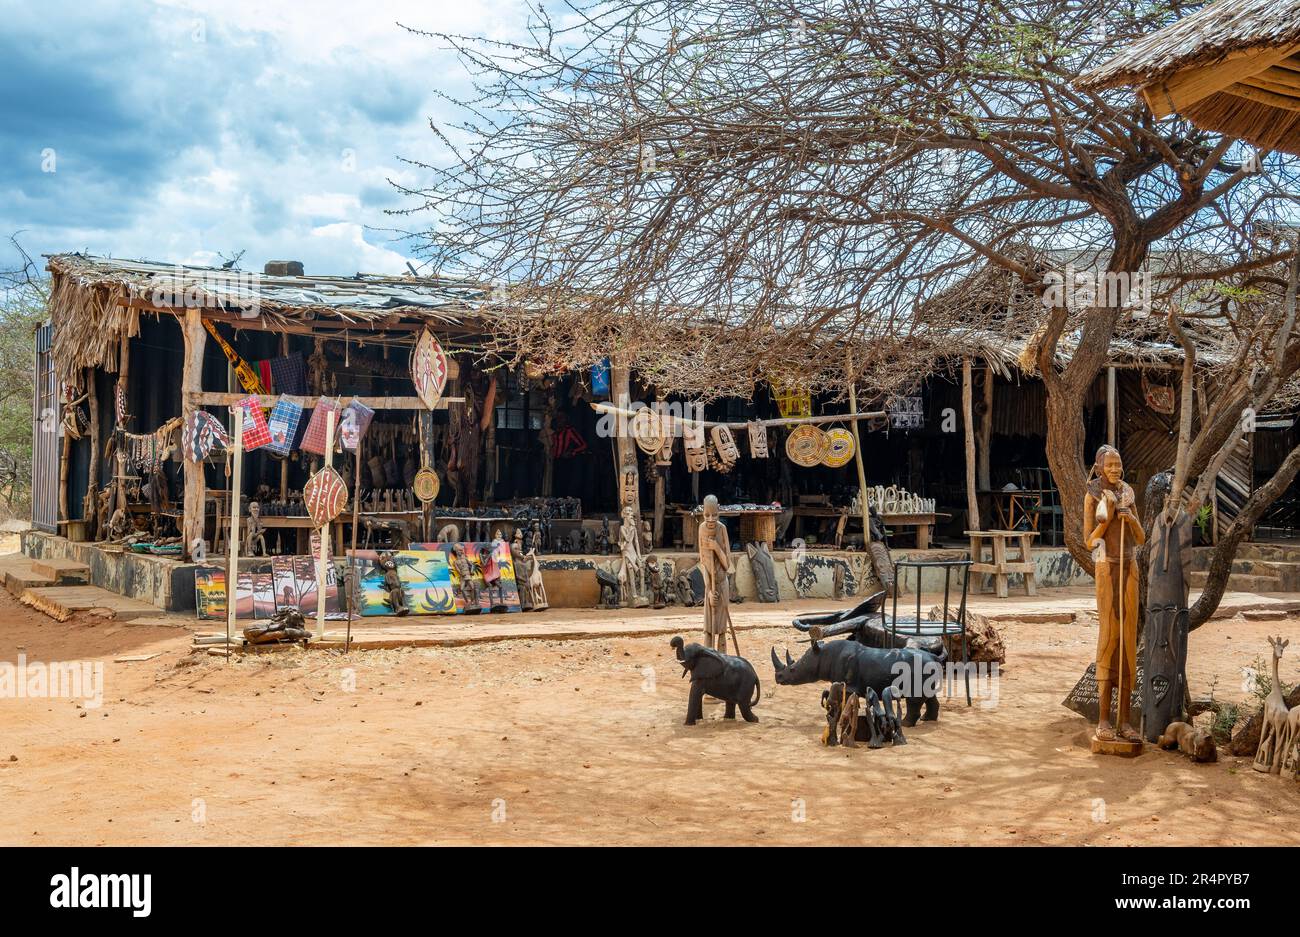 Ein Souvenirladen mit lokalem Kunsthandwerk in einem Nationalpark. Kenia, Afrika. Stockfoto